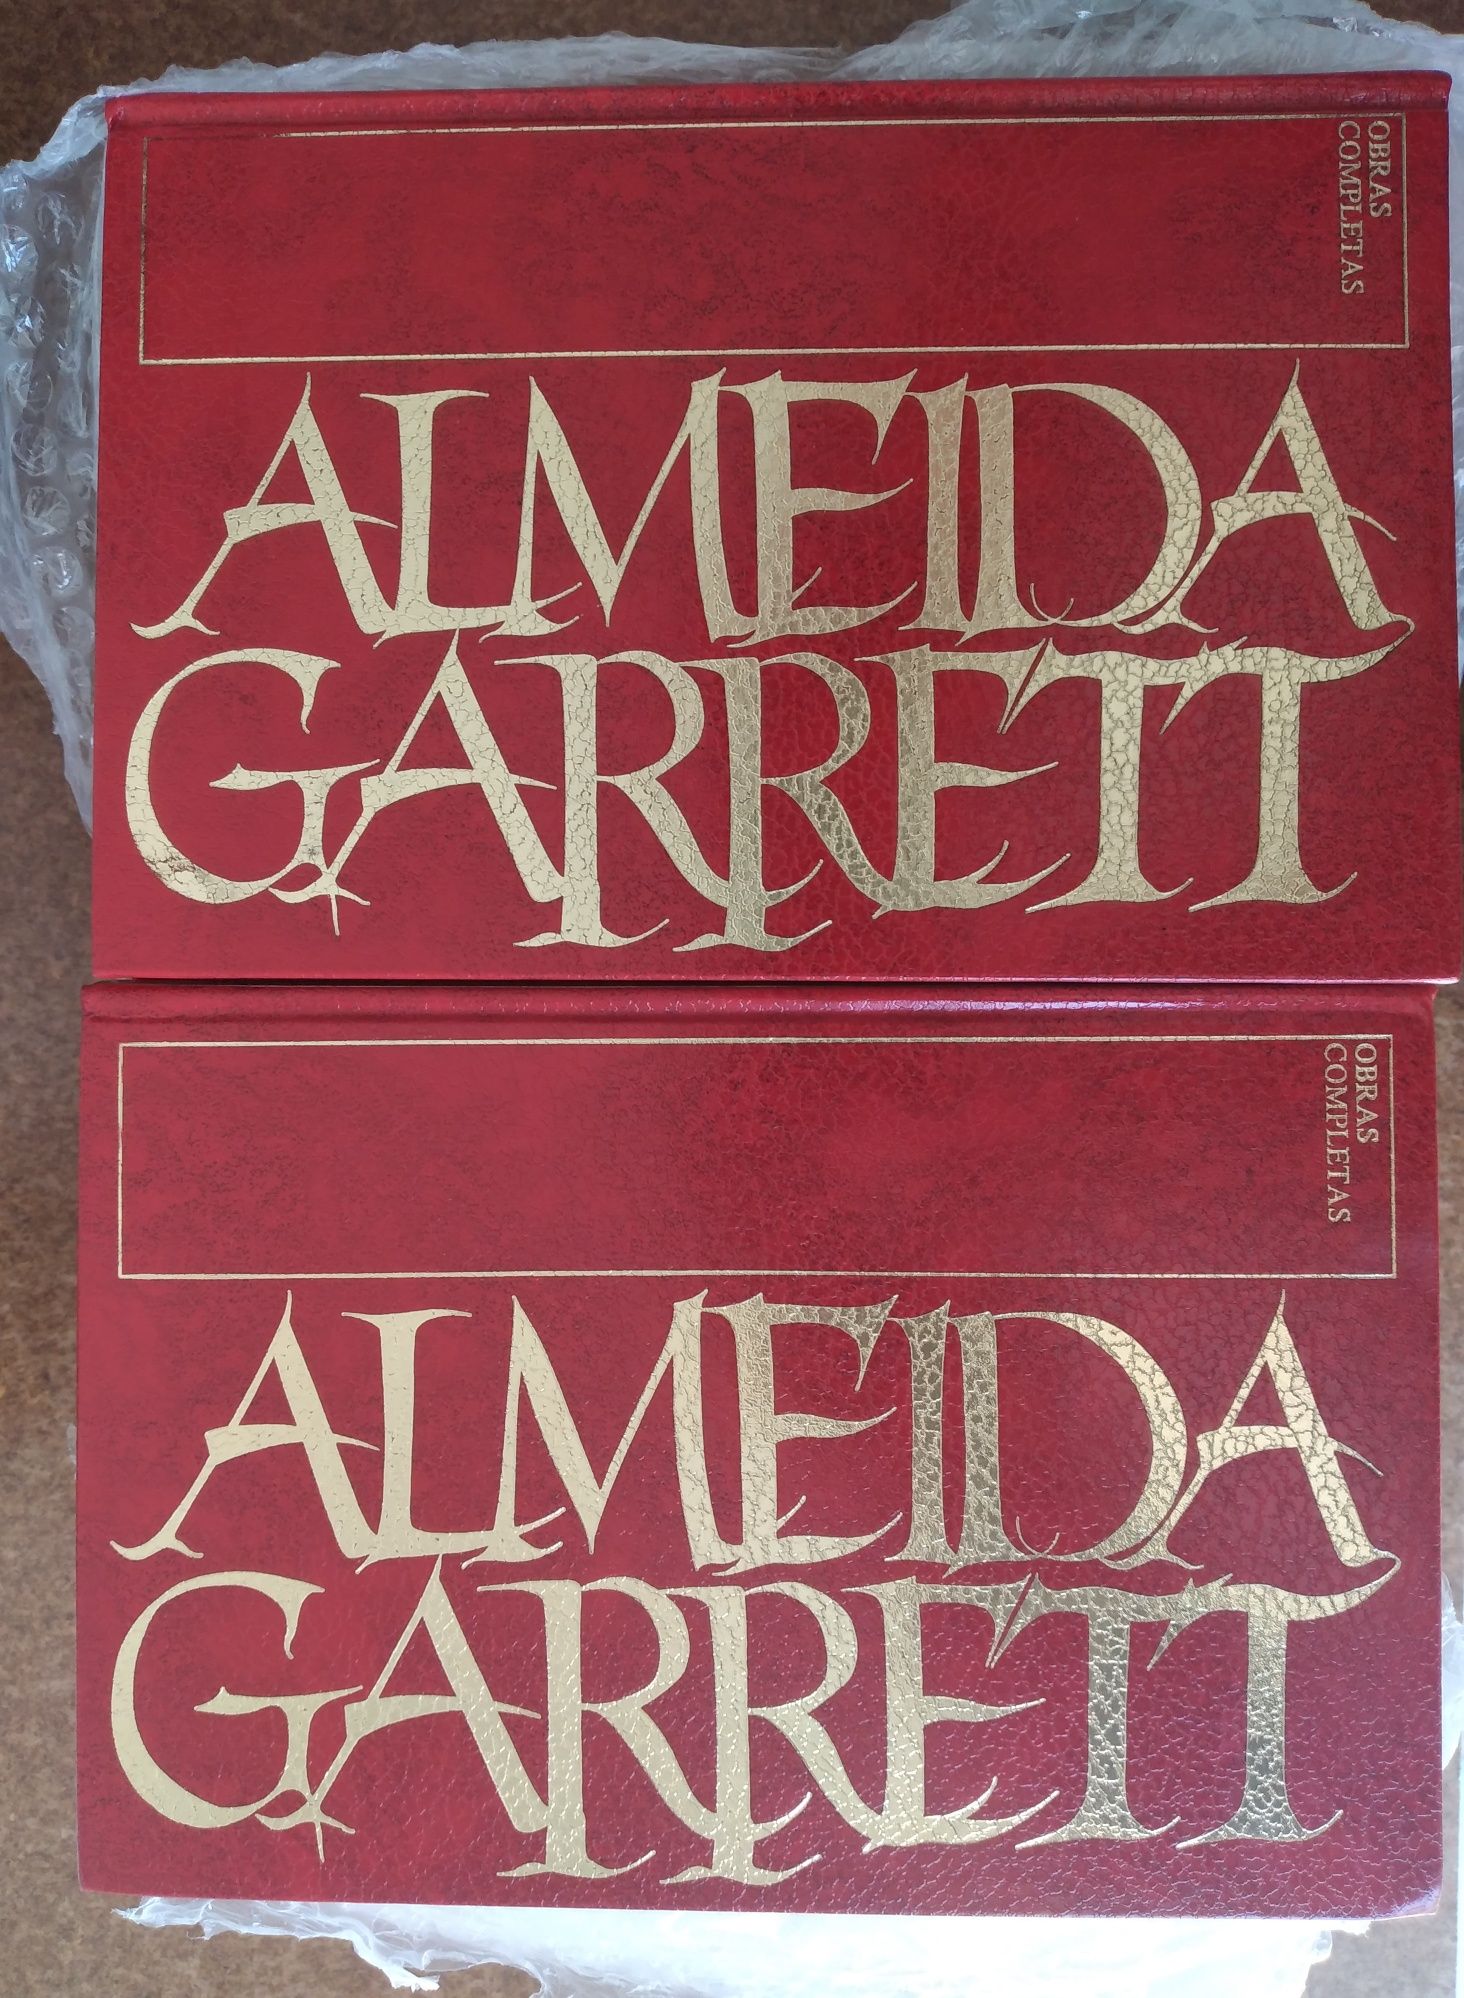 Almeida Garrett - obra completa - 15 livros novos